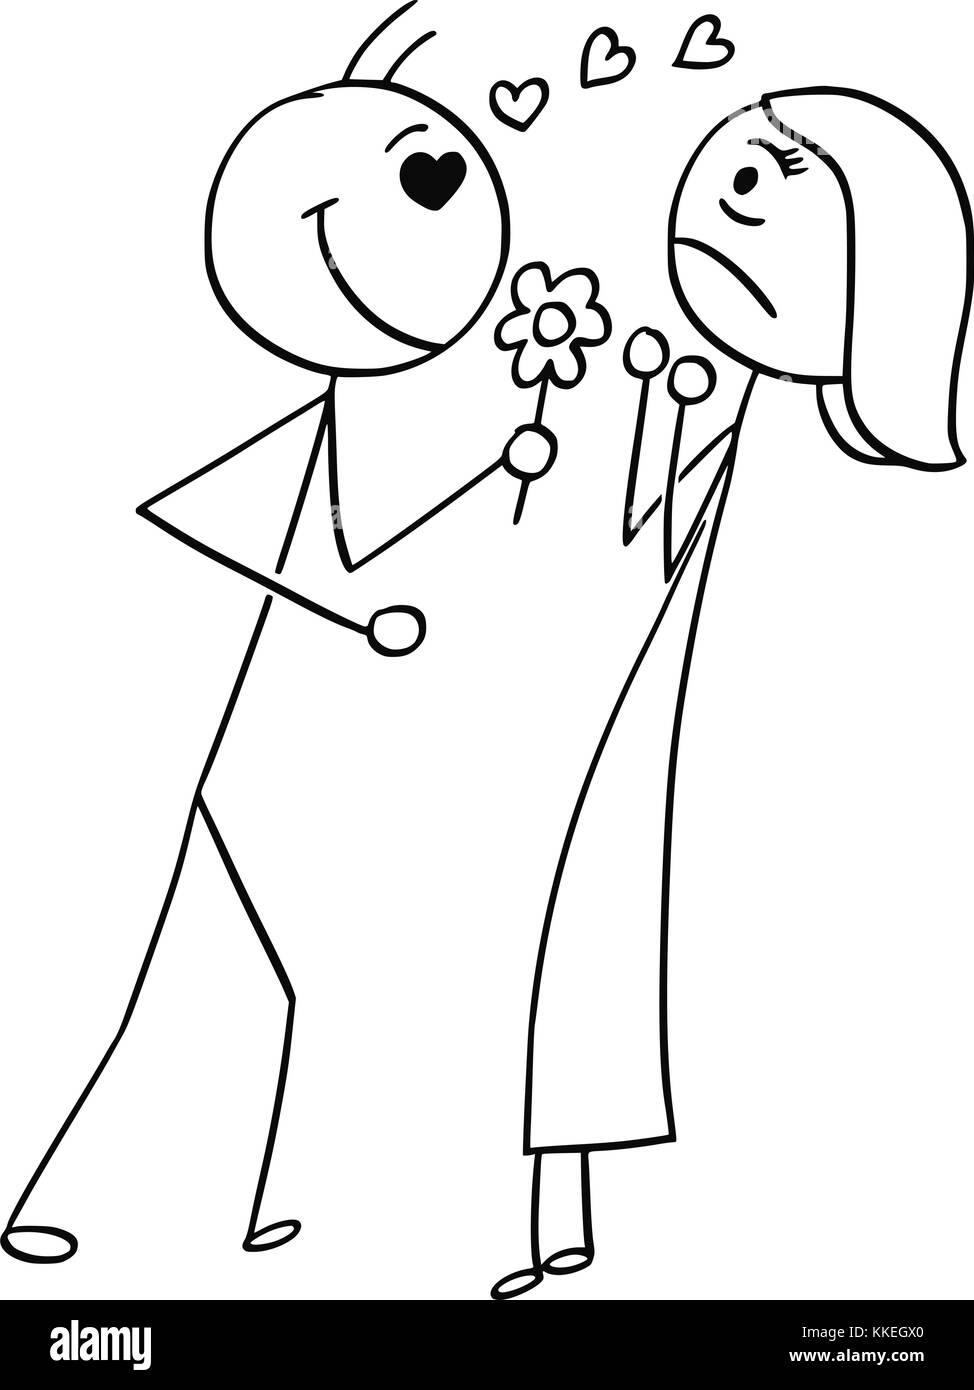 Cartoon stick man dessin illustration de femme à résister à la confession d'amour déclaration d'homme avec des fleurs et des symboles ci-dessus. Illustration de Vecteur